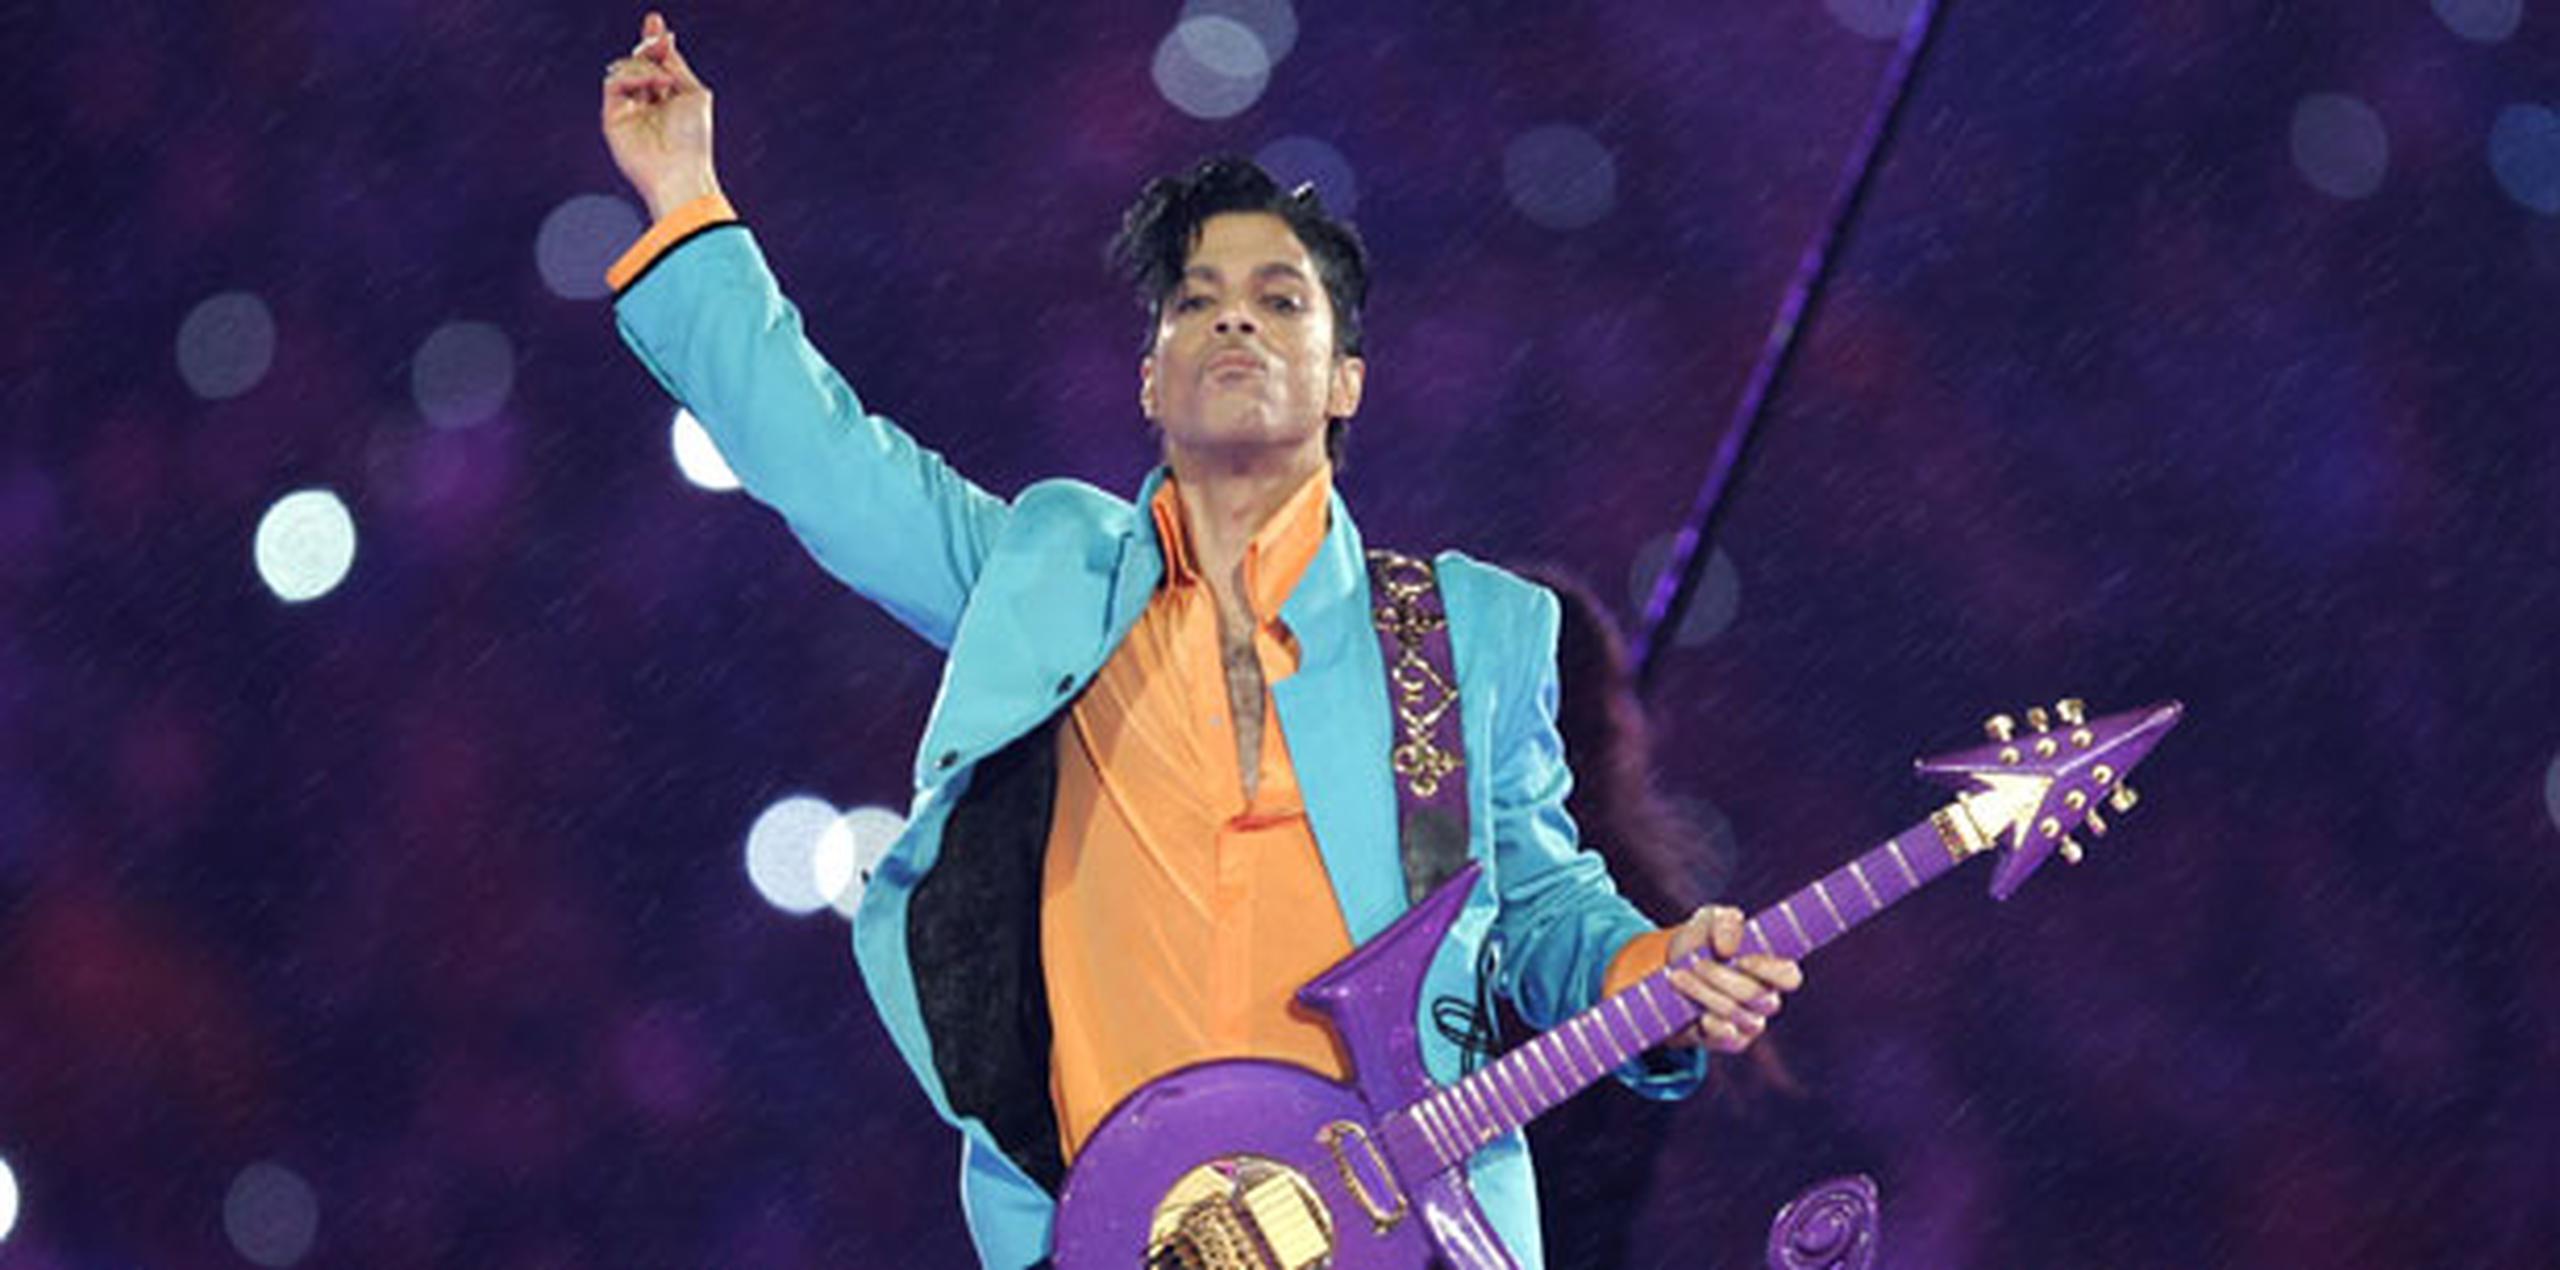 En la primera semana completa de ventas tras la muerte de Prince, ocurrida el 21 de abril, cinco de sus álbumes estuvieron en la lista Top 10 de Billboard en el segundo, tercer, cuarto, sexto y séptimo puesto. (AP Photo/Chris O'Meara, File)
